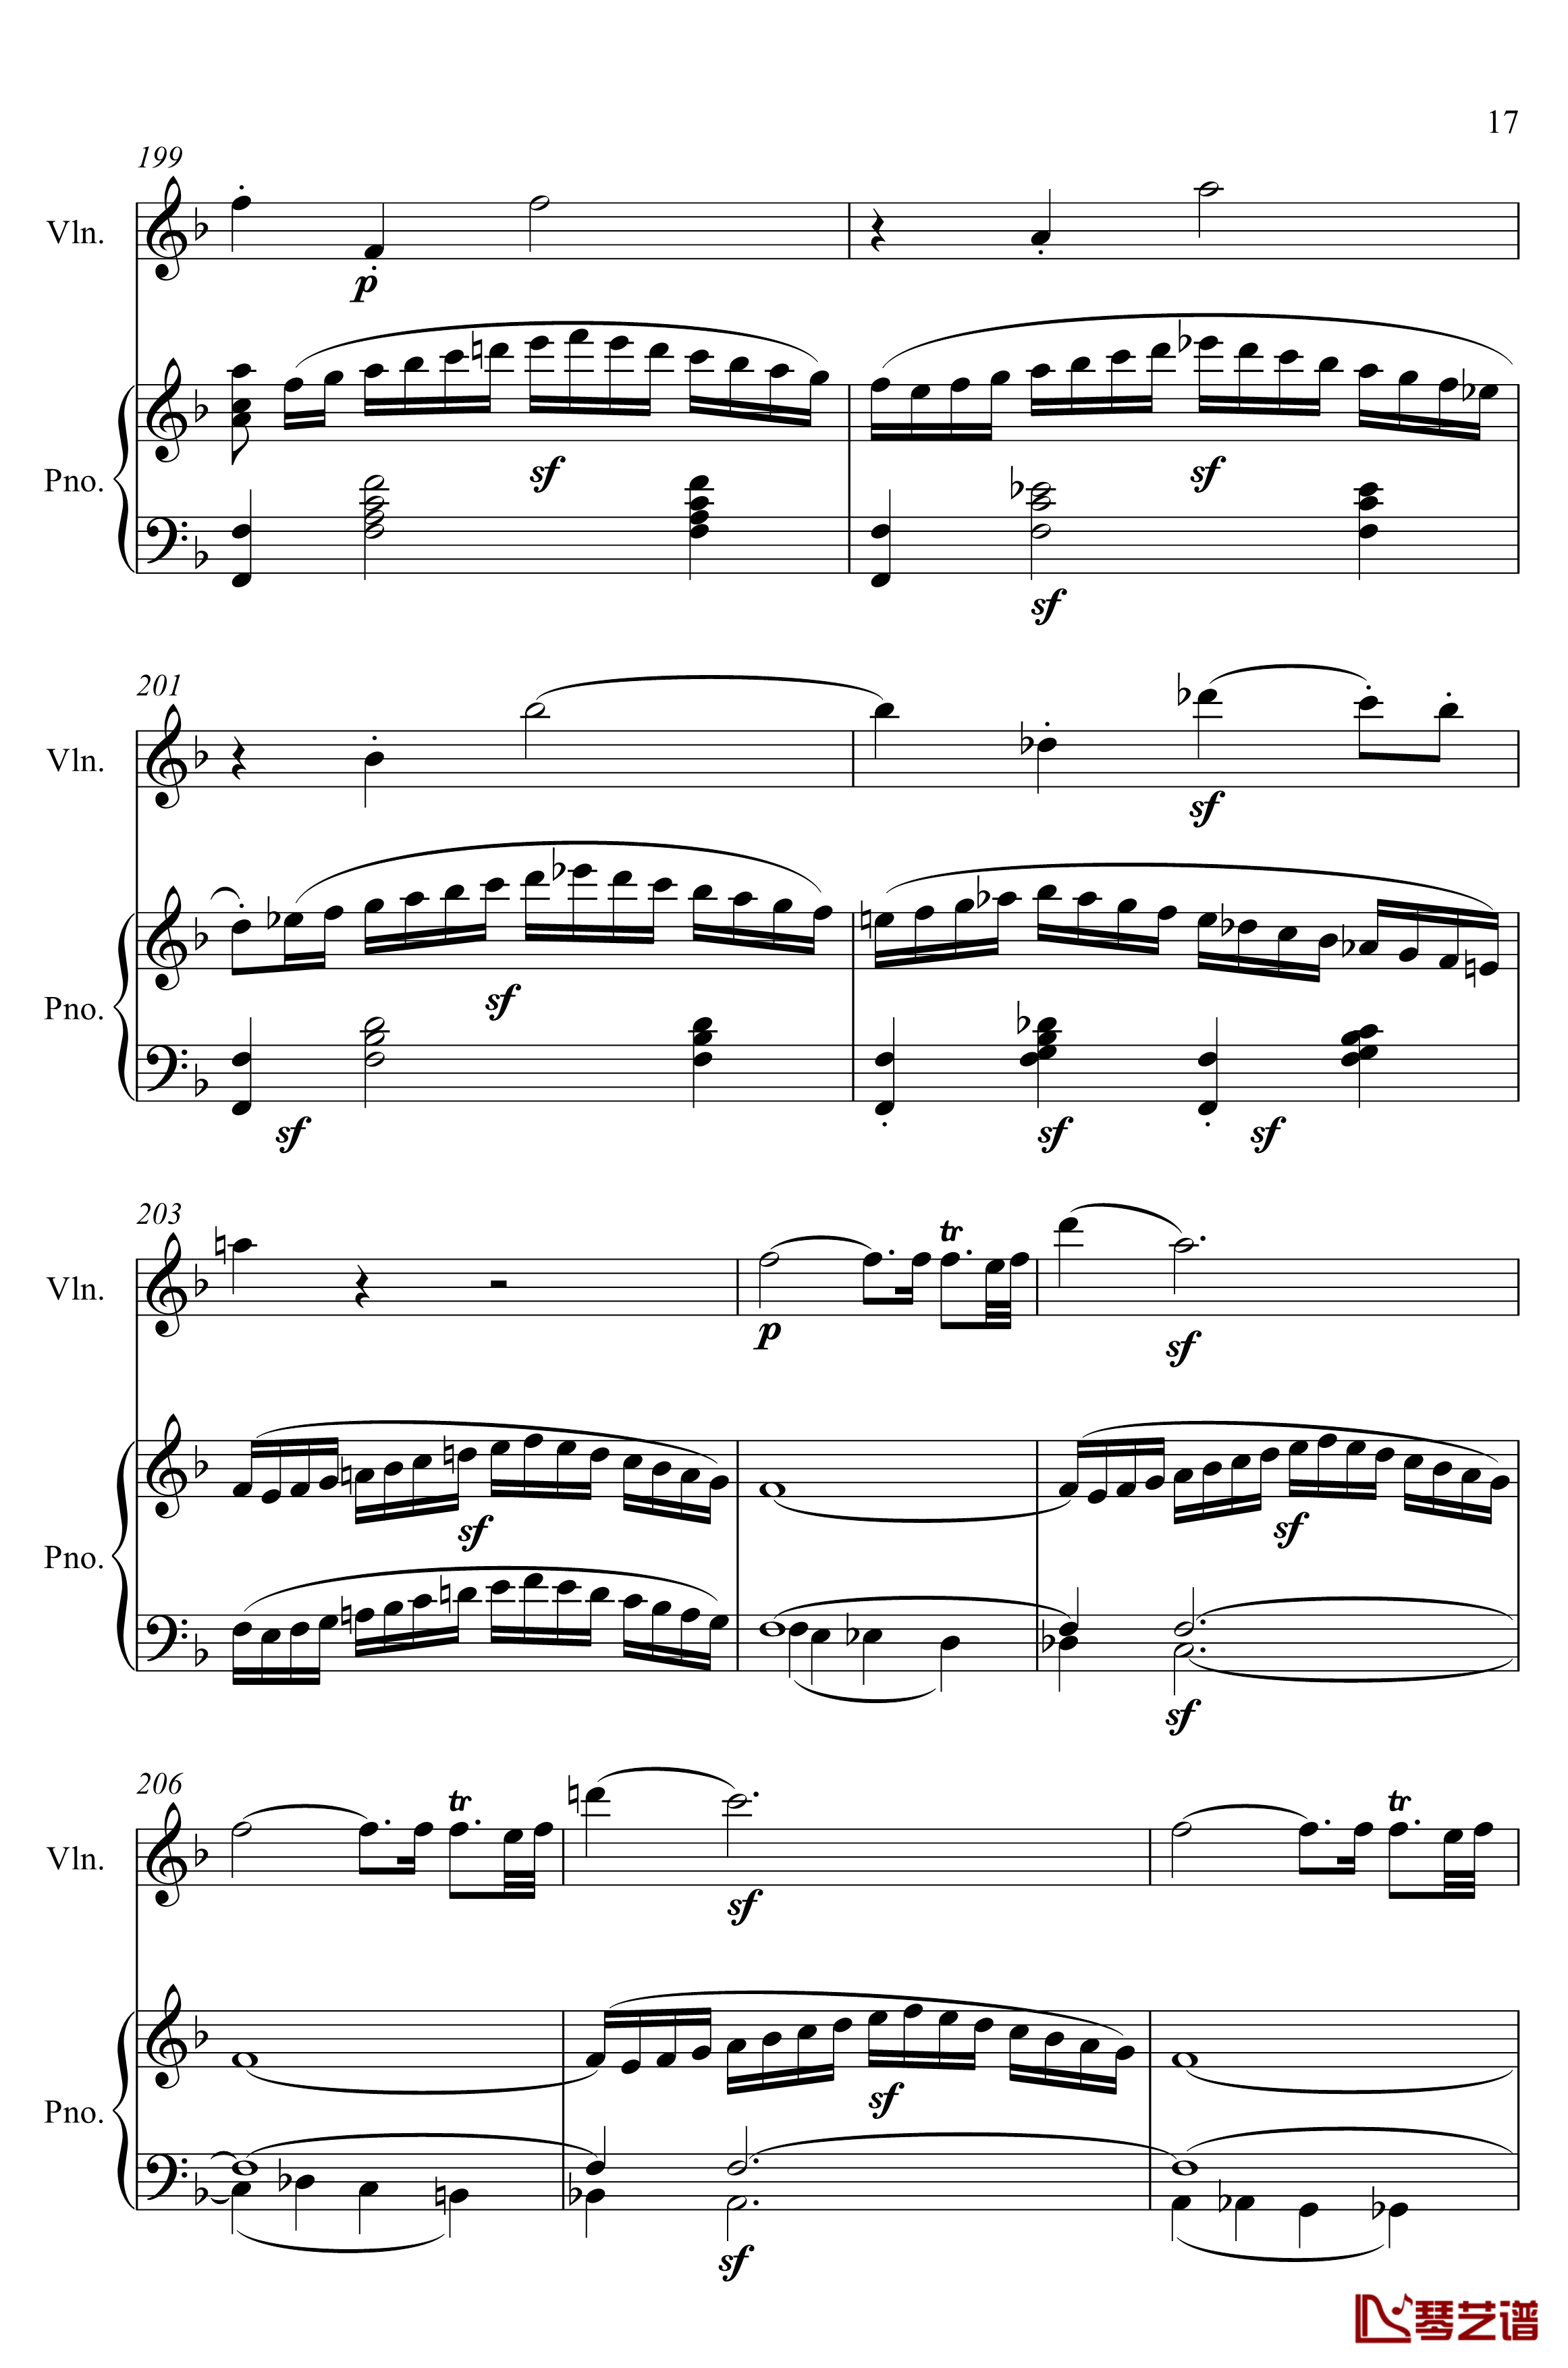 第5小提琴与钢琴奏鸣曲钢琴谱-第一乐章钢琴谱-贝多芬-beethoven